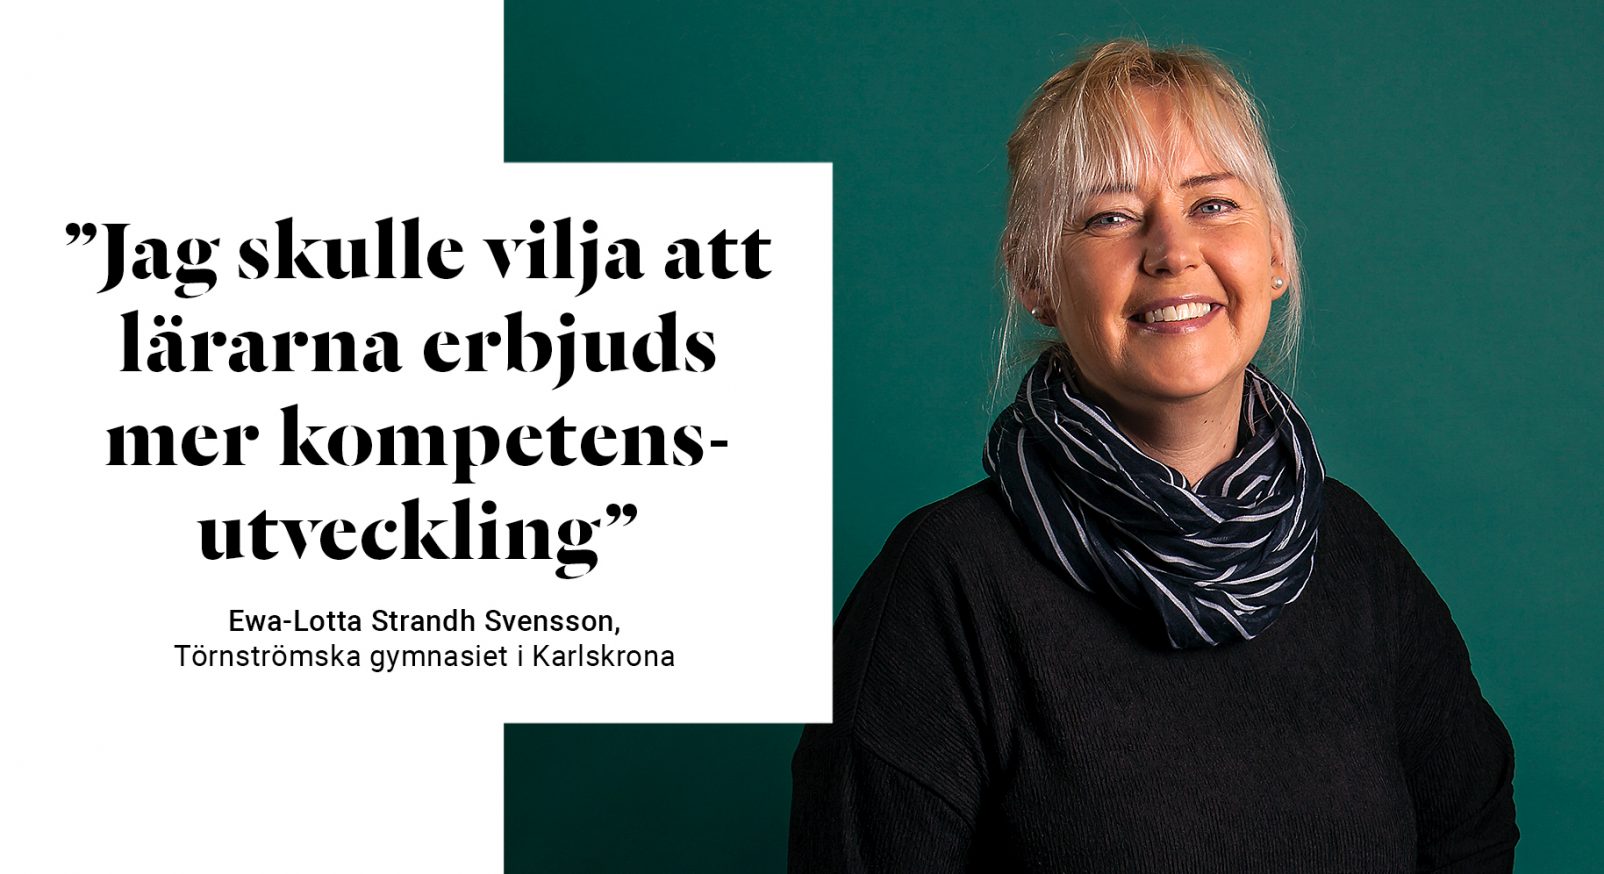 Ewa-Lotta Strandh Svensson Karlskrona